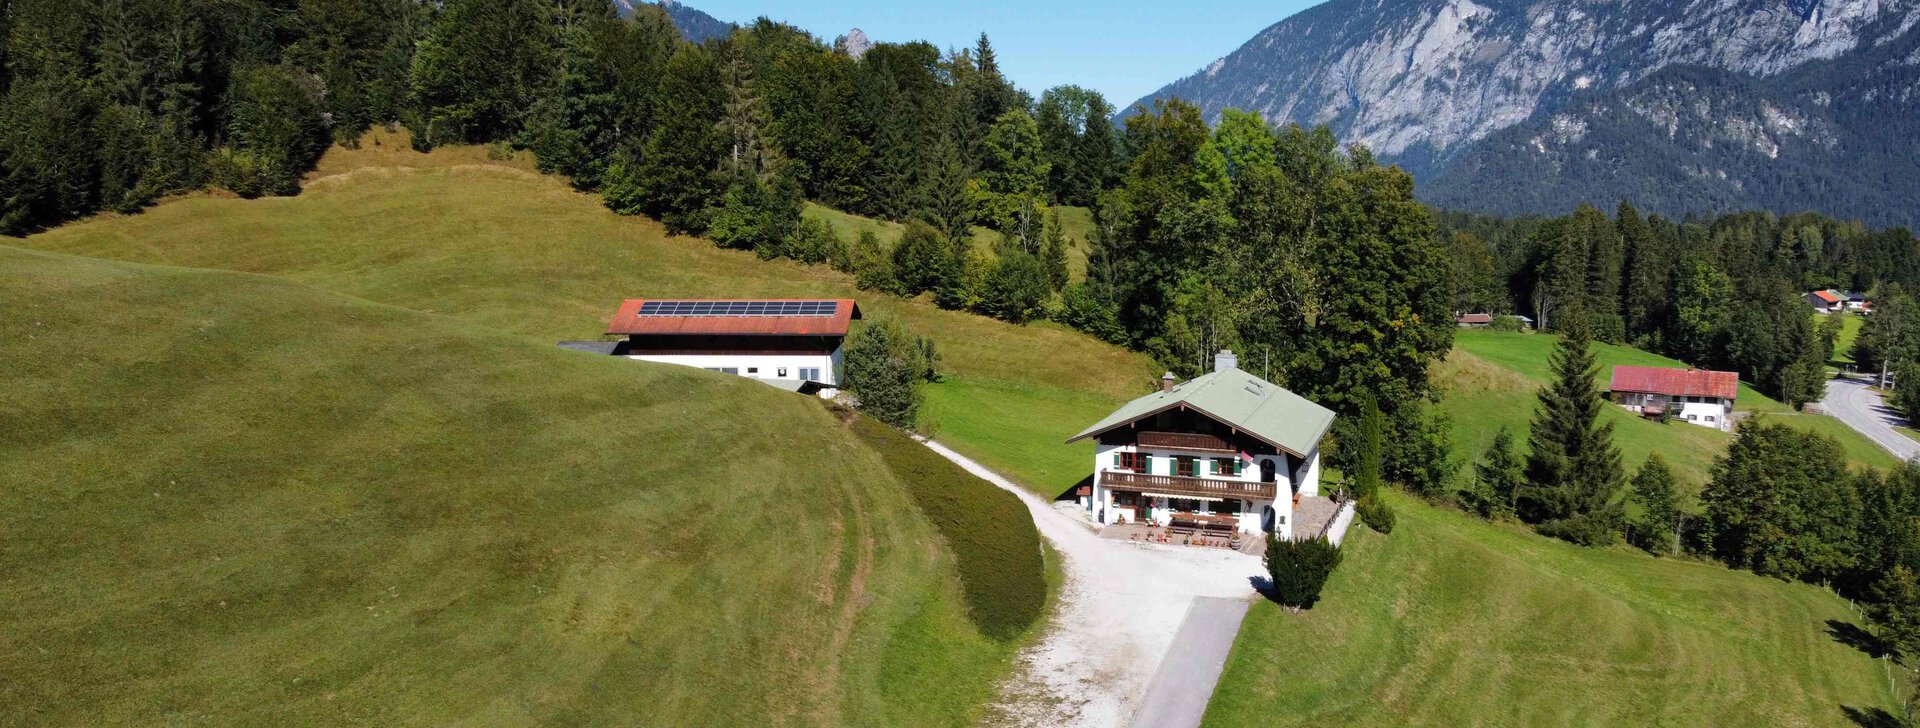 bauernhof, bauernhaus, bauernanwesen, bischofswiesen, berchtesgaden, berchtesgadener land, bgl, immobilie kaufen | © HausBauHaus GmbH